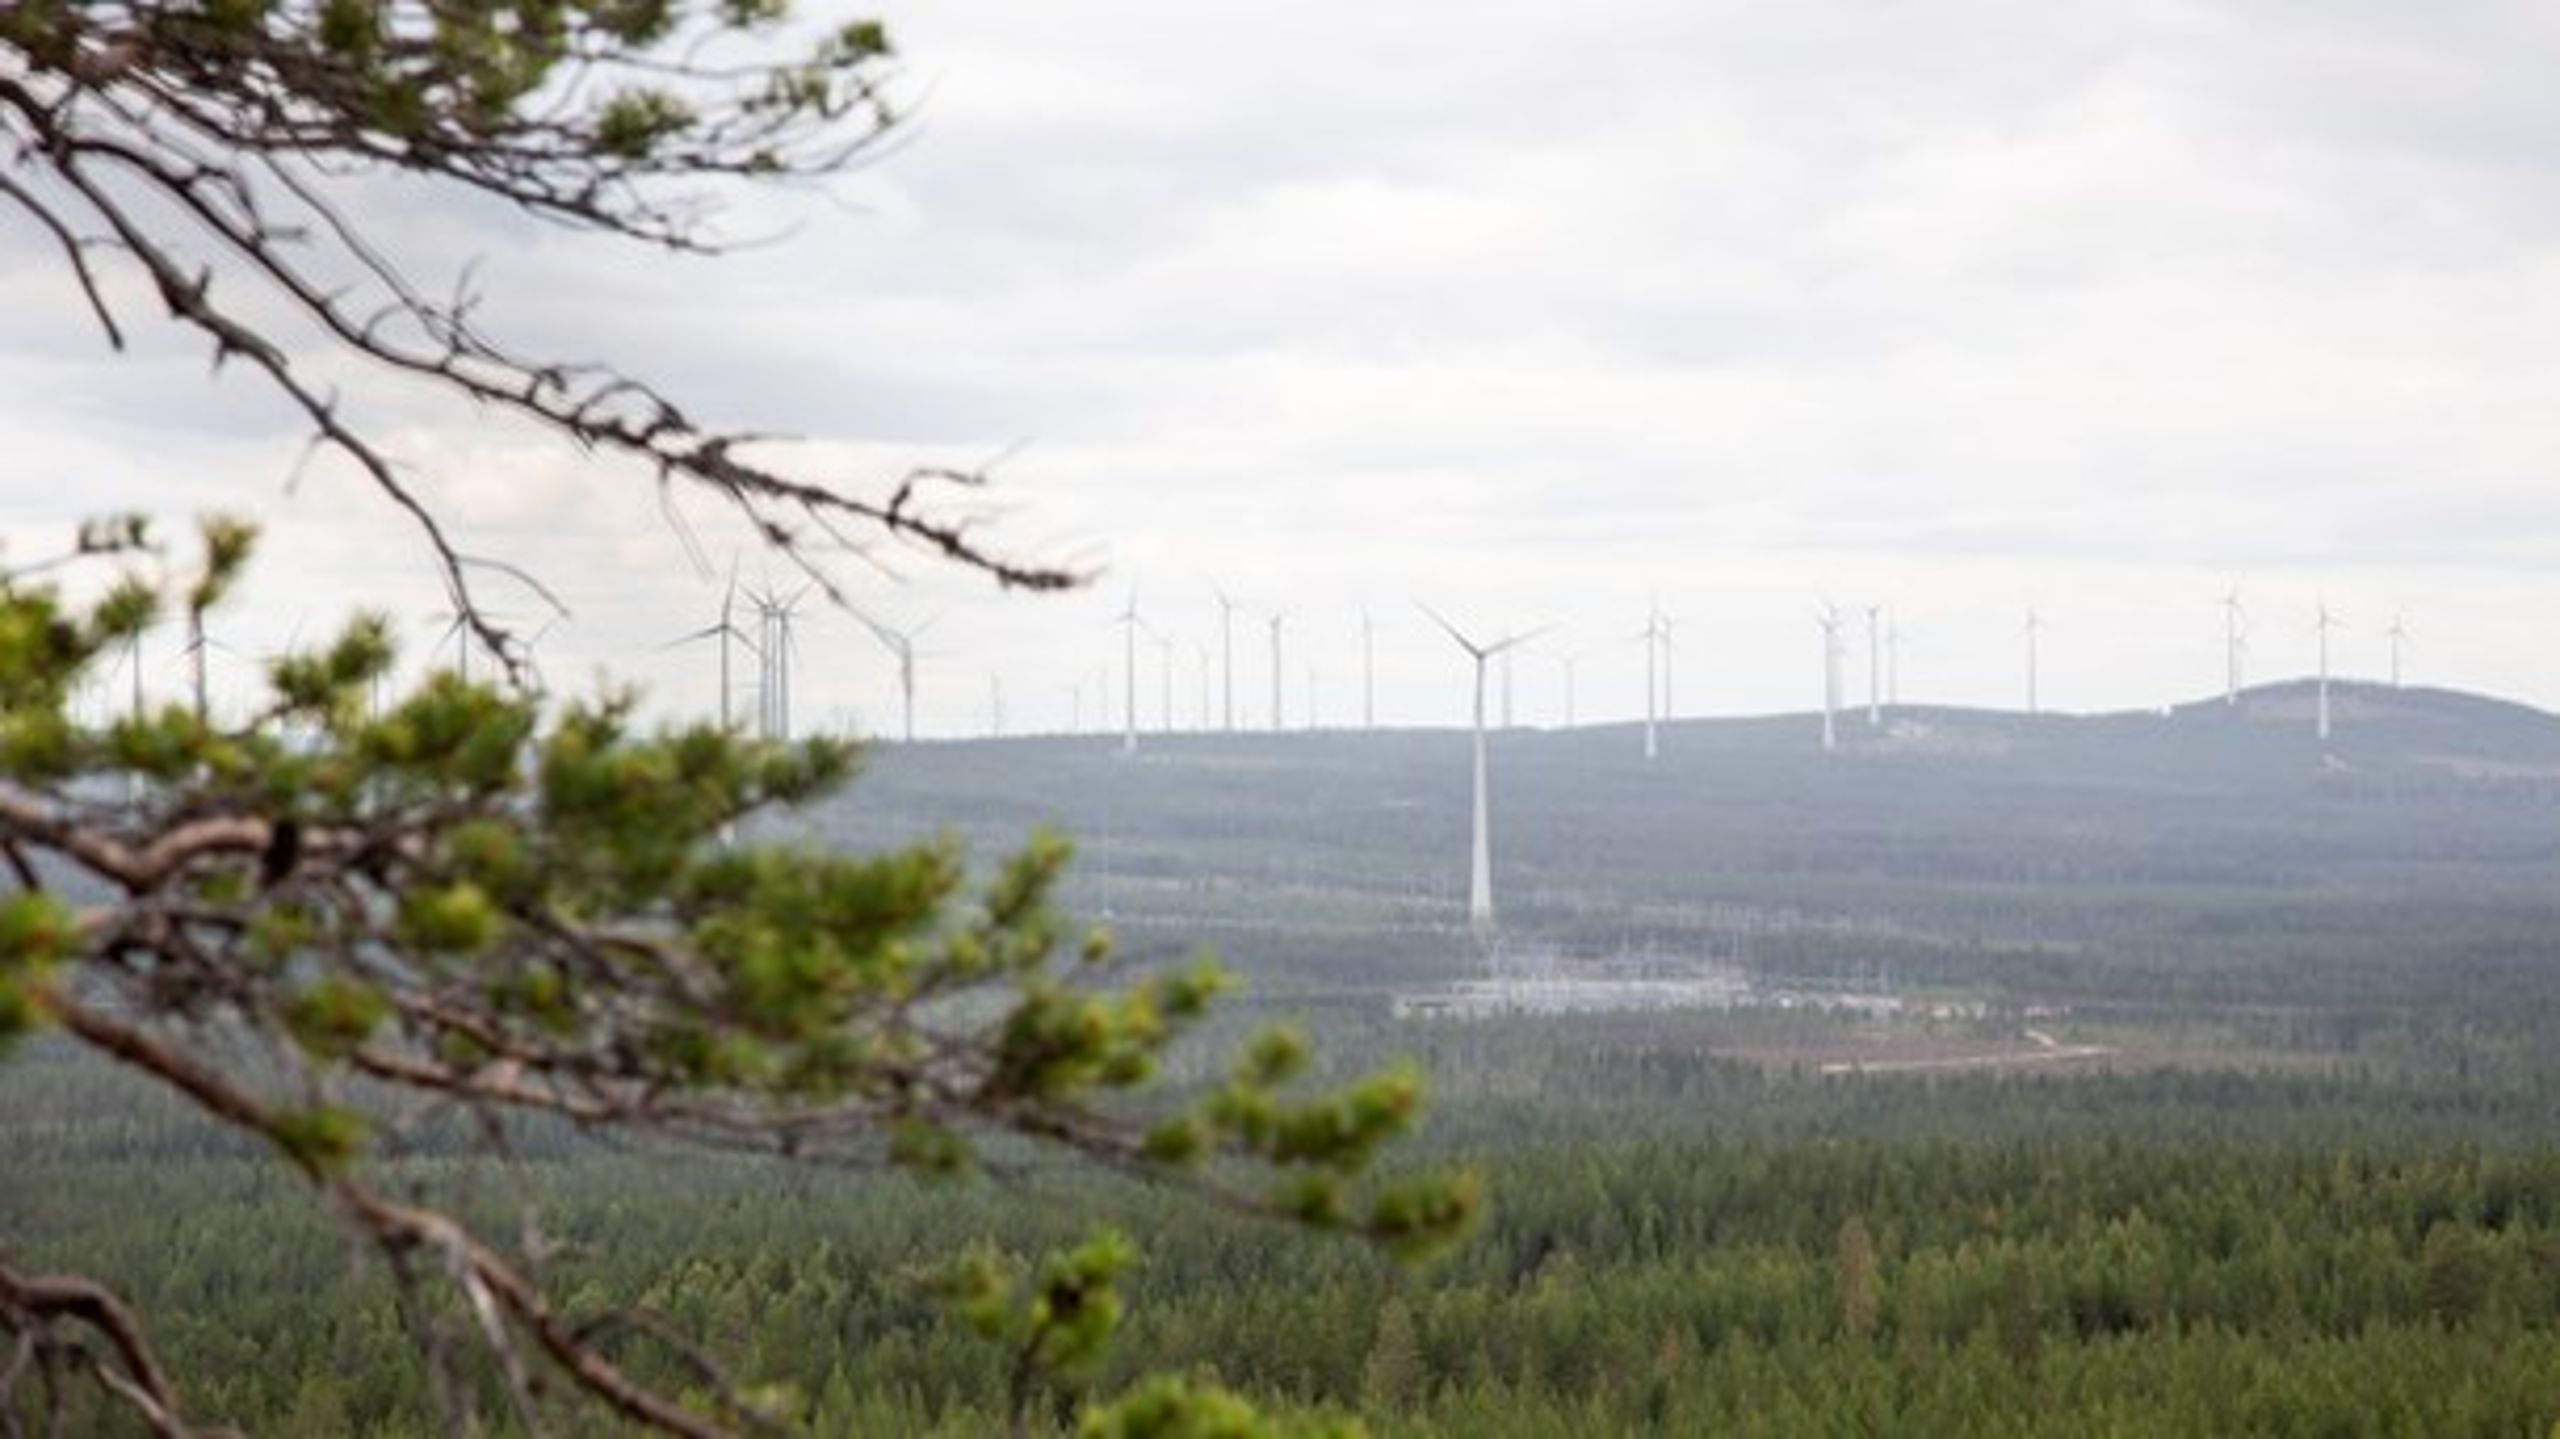 "Sveriges elanvändning finns framförallt i södra Sverige medan merparten av vindkraft och vattenkraft finns i norr."